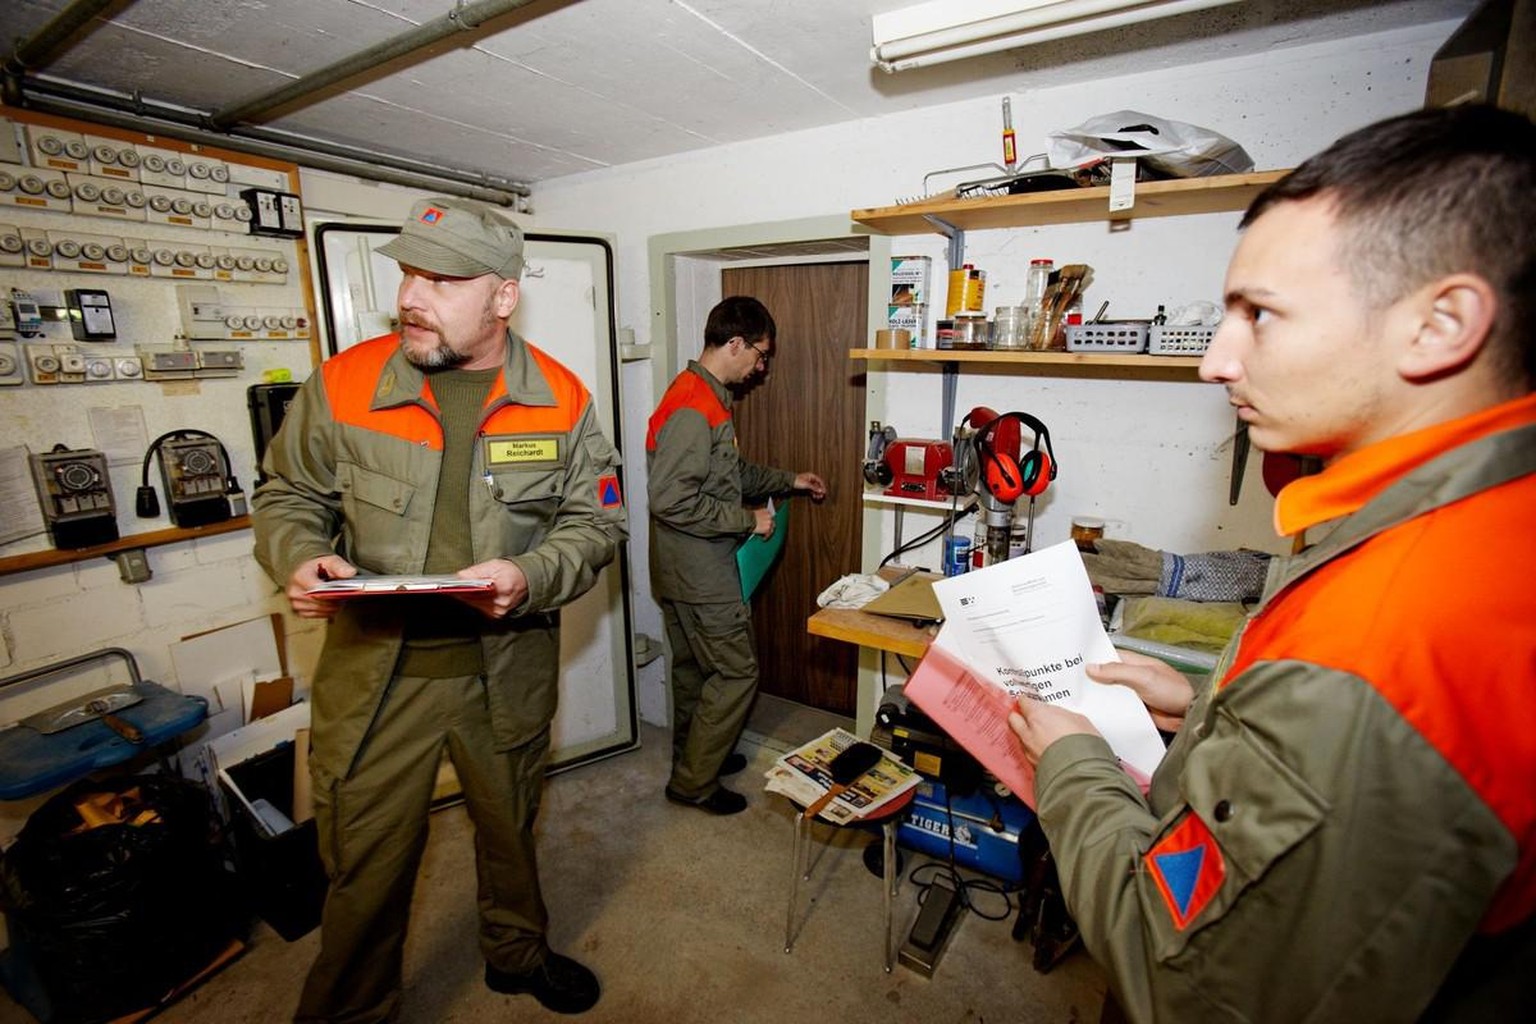 Angehörige des Zivilschutz kontrollieren einen Schutzraum, 2011.
https://www.mediathek.admin.ch/media/image/5cb33726-c5b8-4b07-a171-68f8b4543864